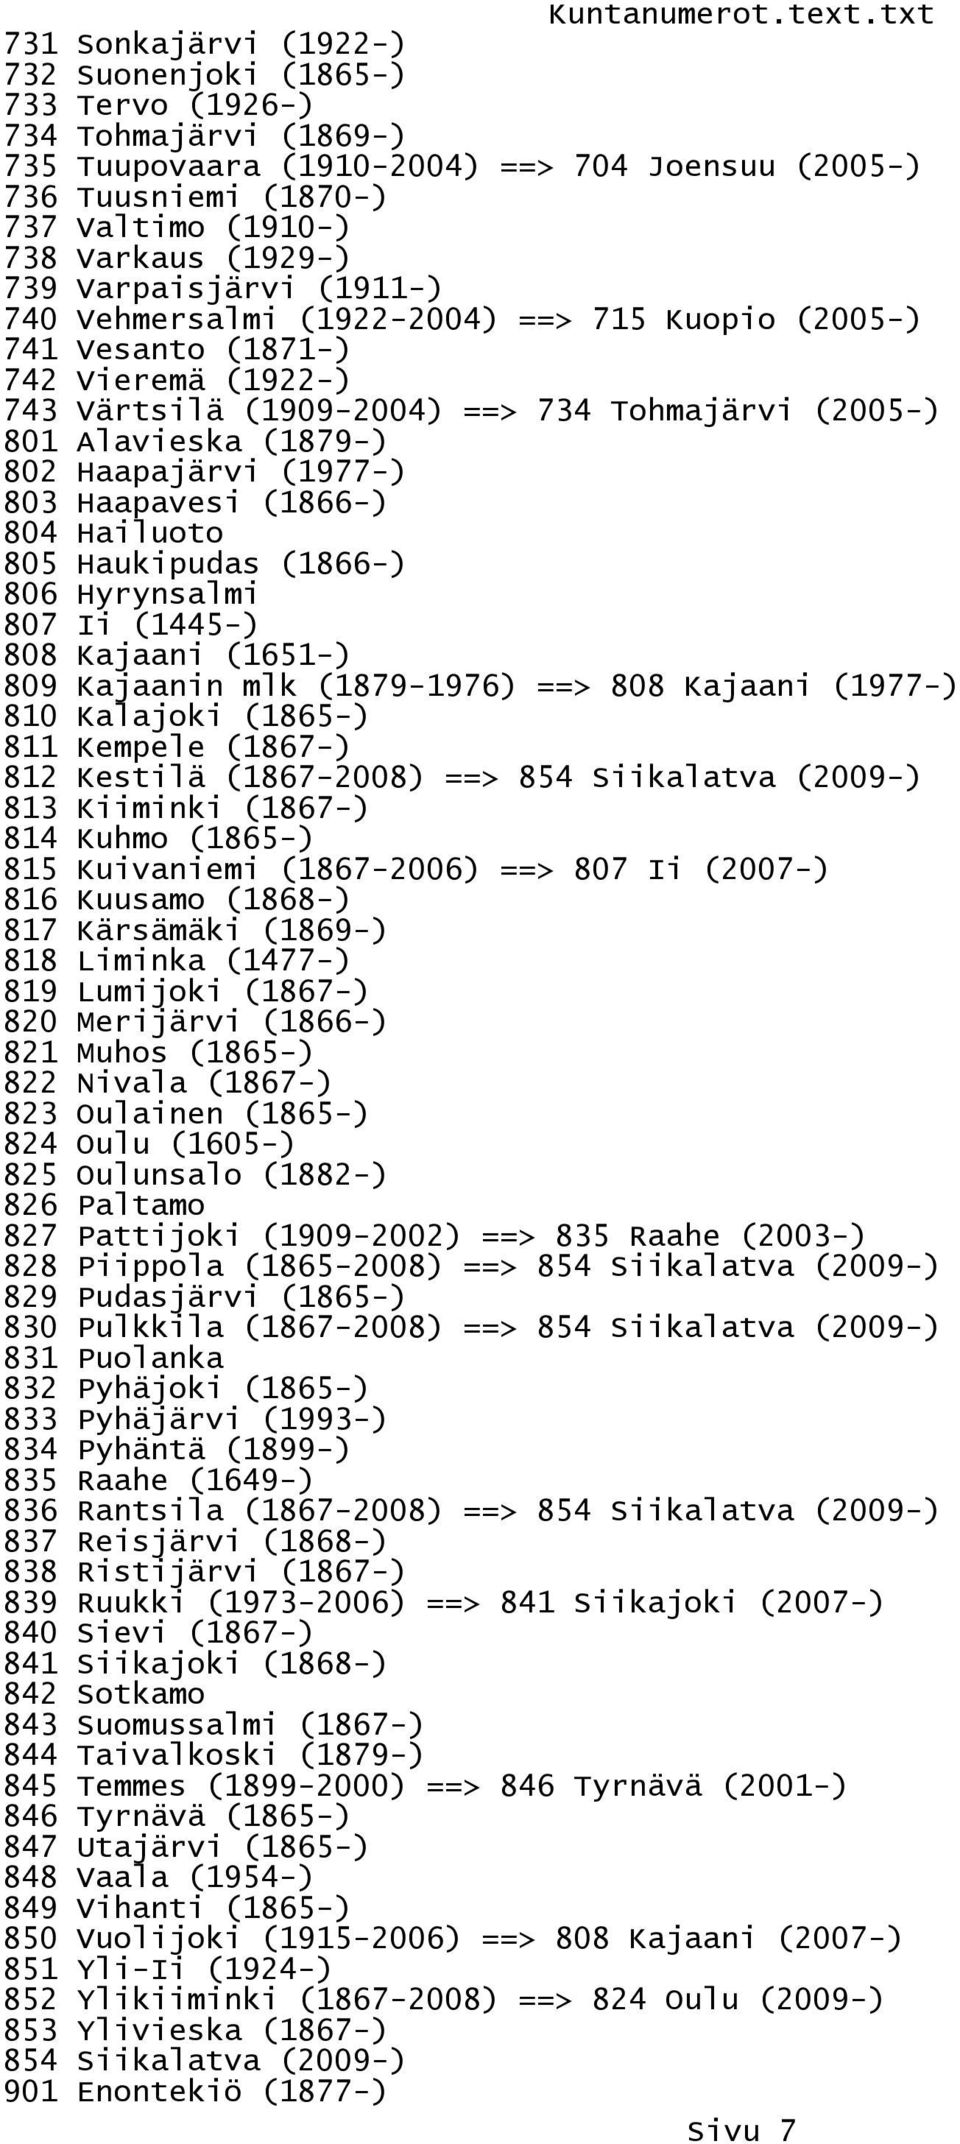 Haapajärvi (1977-) 803 Haapavesi (1866-) 804 Hailuoto 805 Haukipudas (1866-) 806 Hyrynsalmi 807 Ii (1445-) 808 Kajaani (1651-) 809 Kajaanin mlk (1879-1976) ==> 808 Kajaani (1977-) 810 Kalajoki